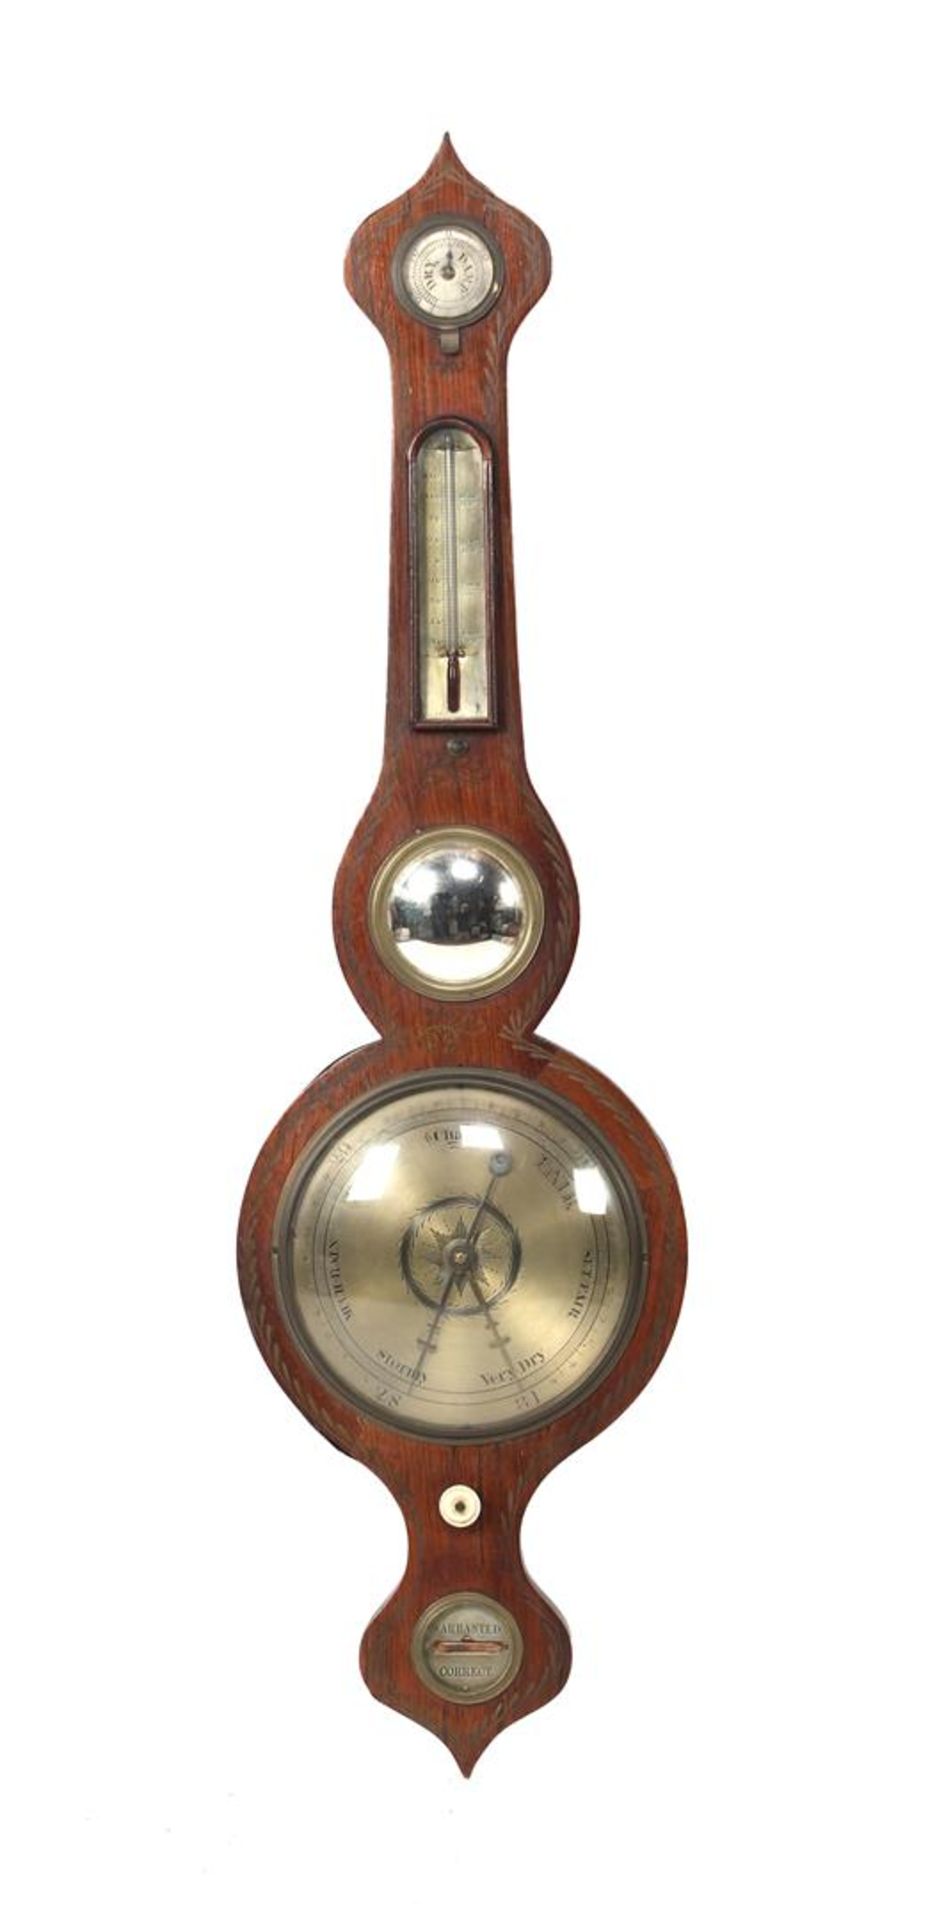 English banjo barometer